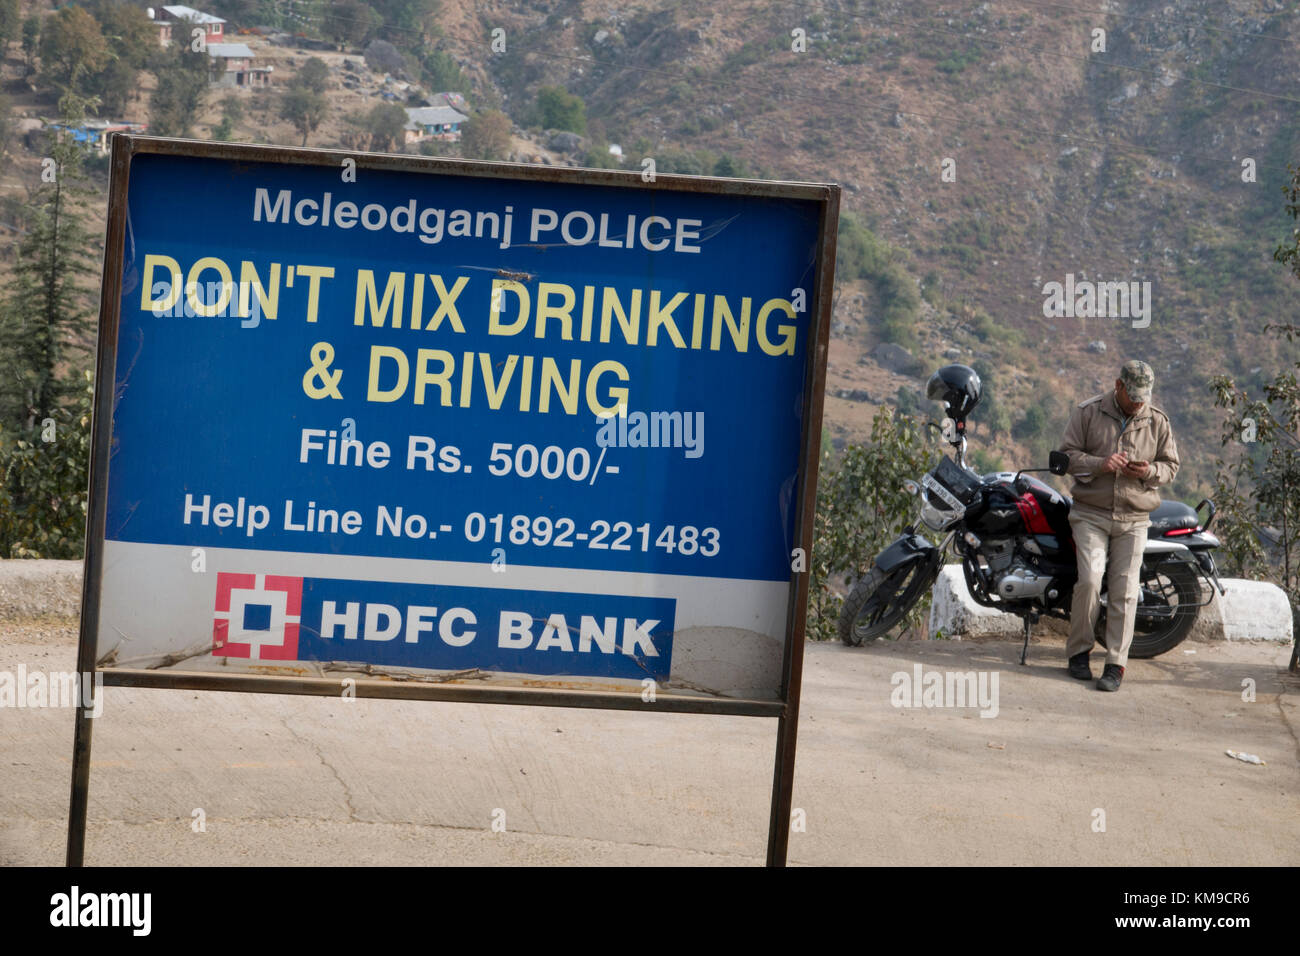 Señal de carretera en inglés asesorar contra la conducción en estado de ebriedad en Mcleod Ganj, india Foto de stock